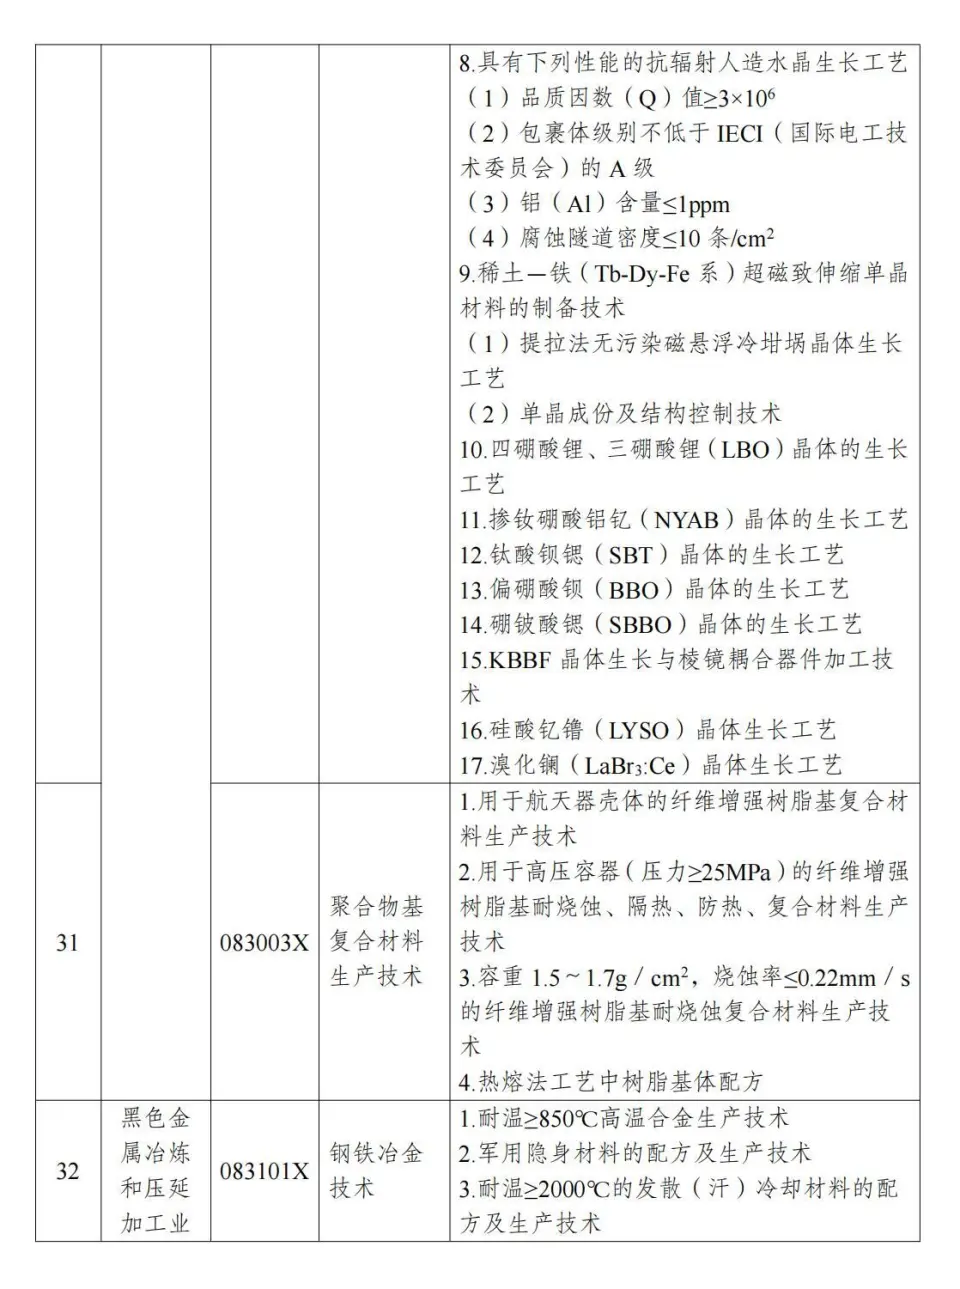 两部分公布《中国制止出口限制出口技术目录》 第10张图片